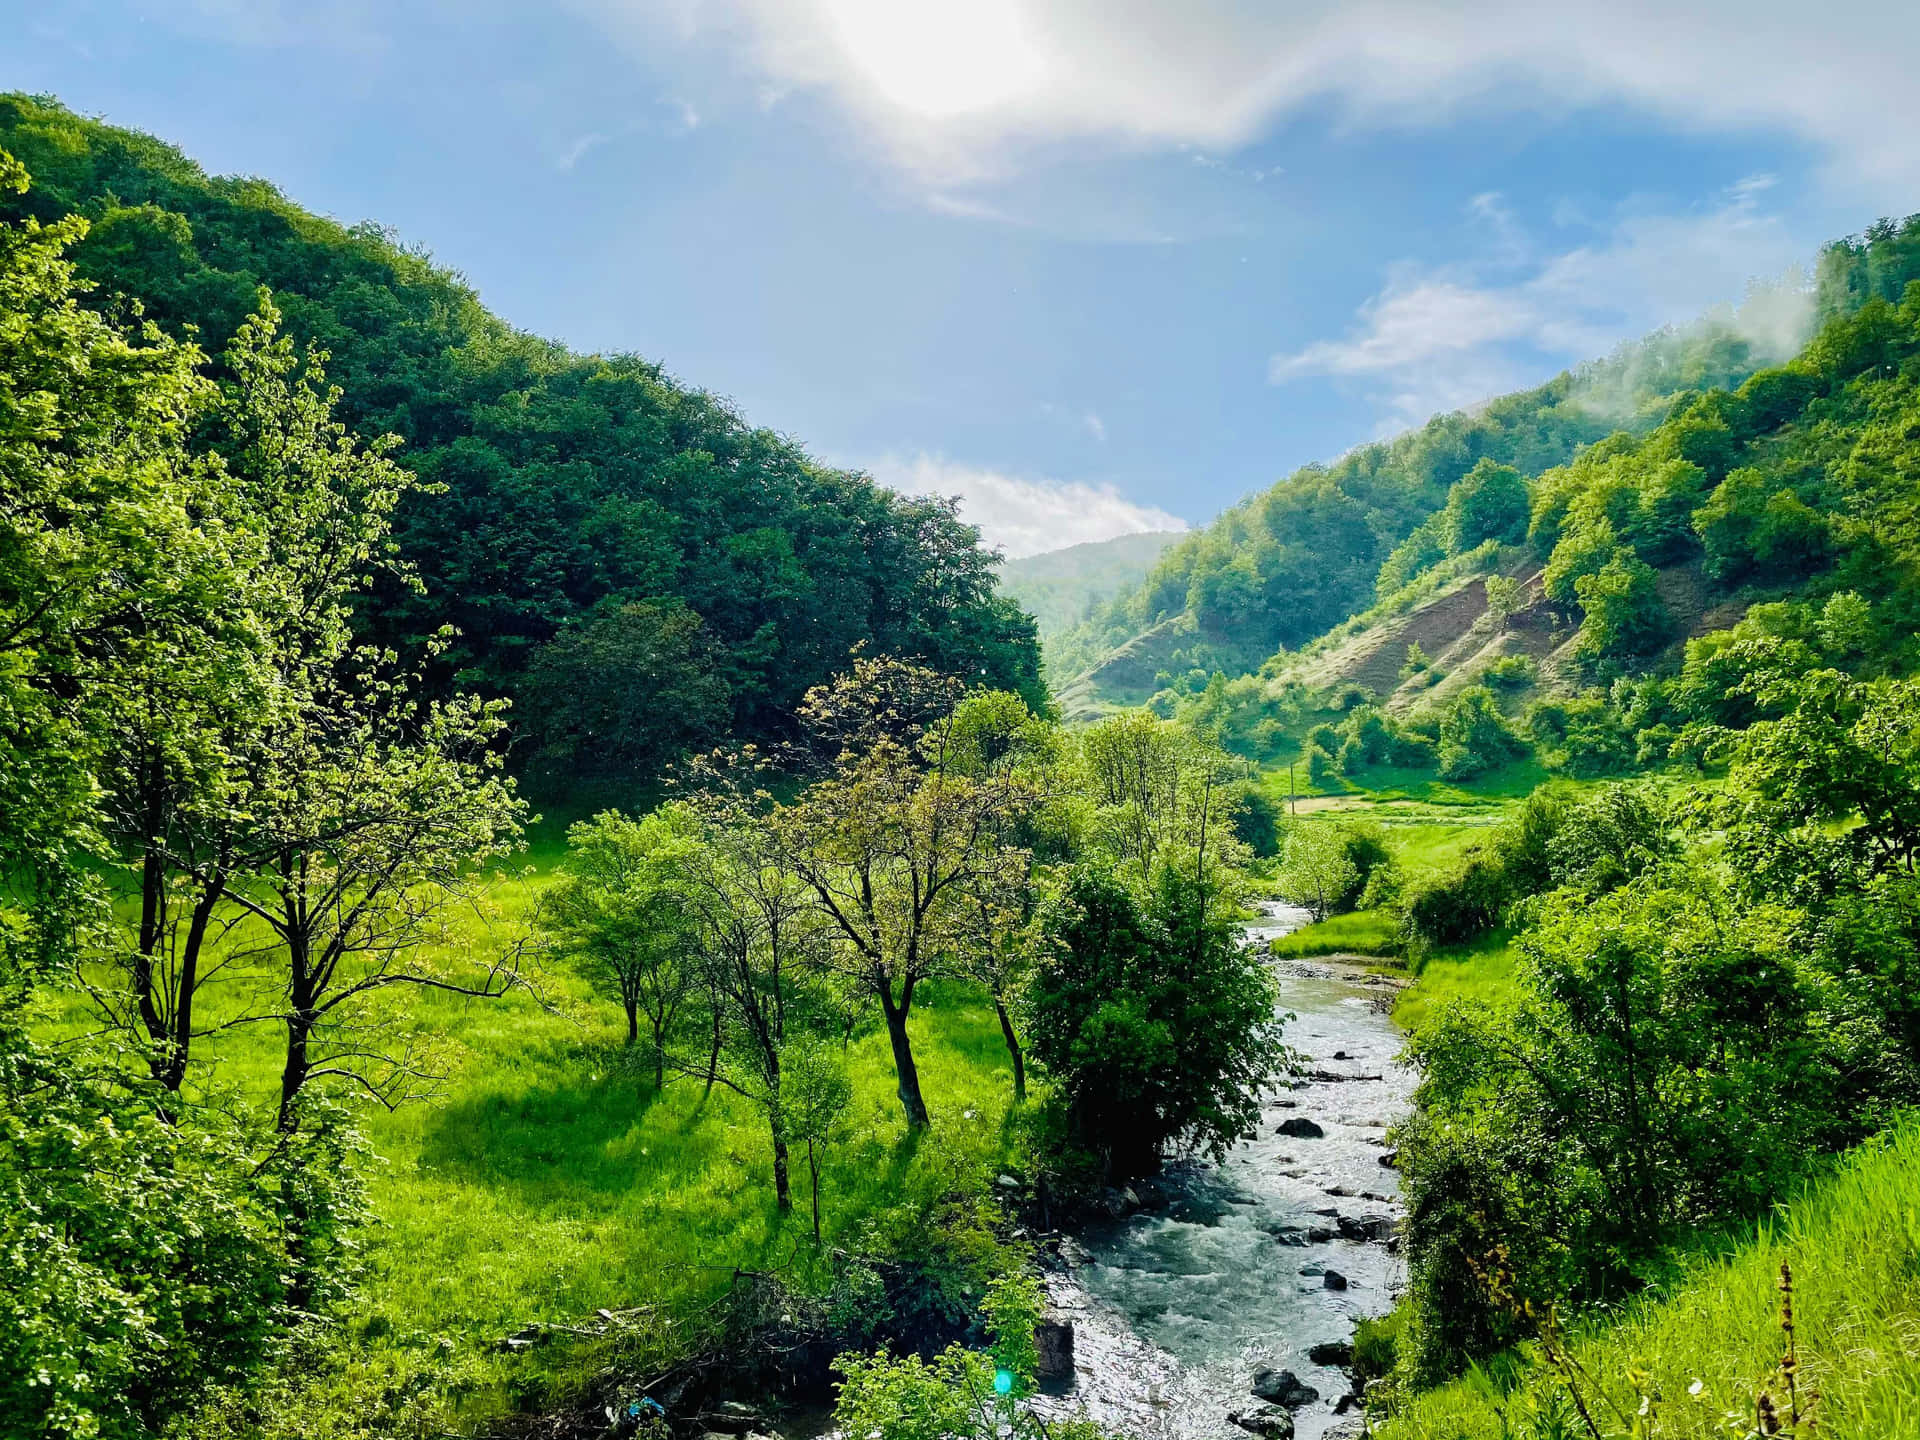 A River Runs Through A Lush Green Valley